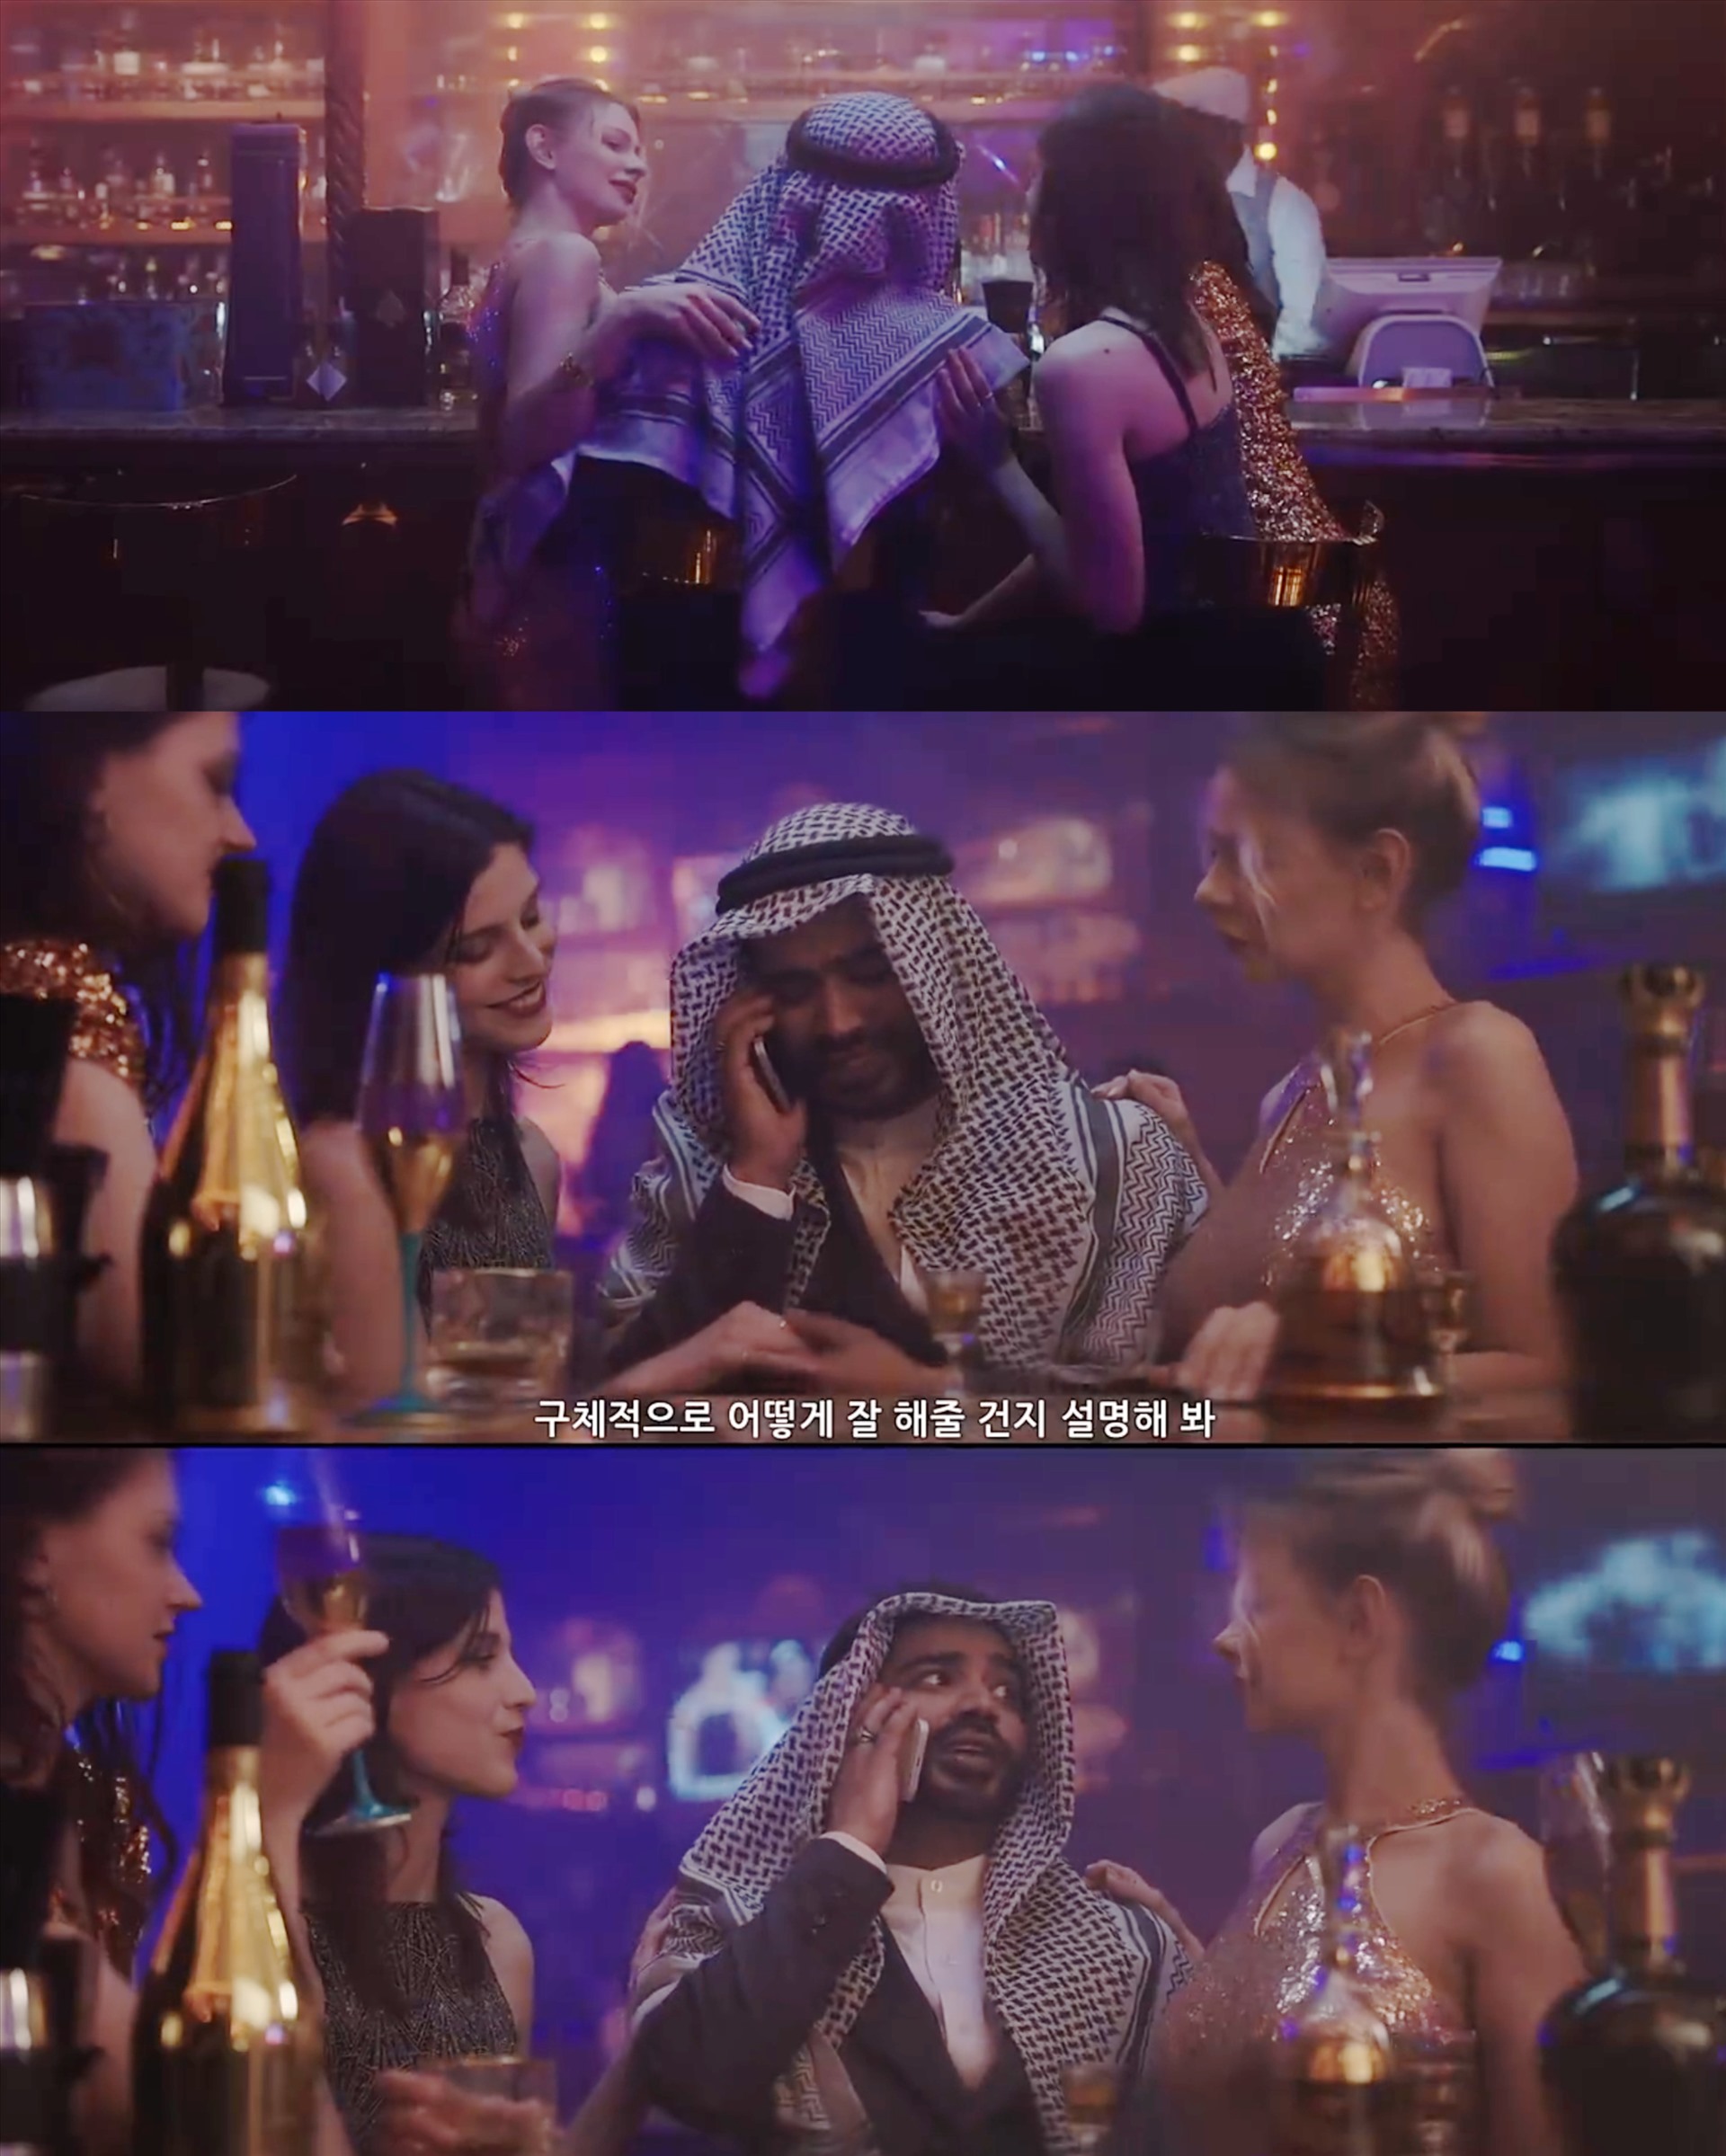 Cảnh Hoàng tử Ả Rập vui đùa cùng nhiều phụ nữ trong một club. Ảnh: Nhà sản xuất